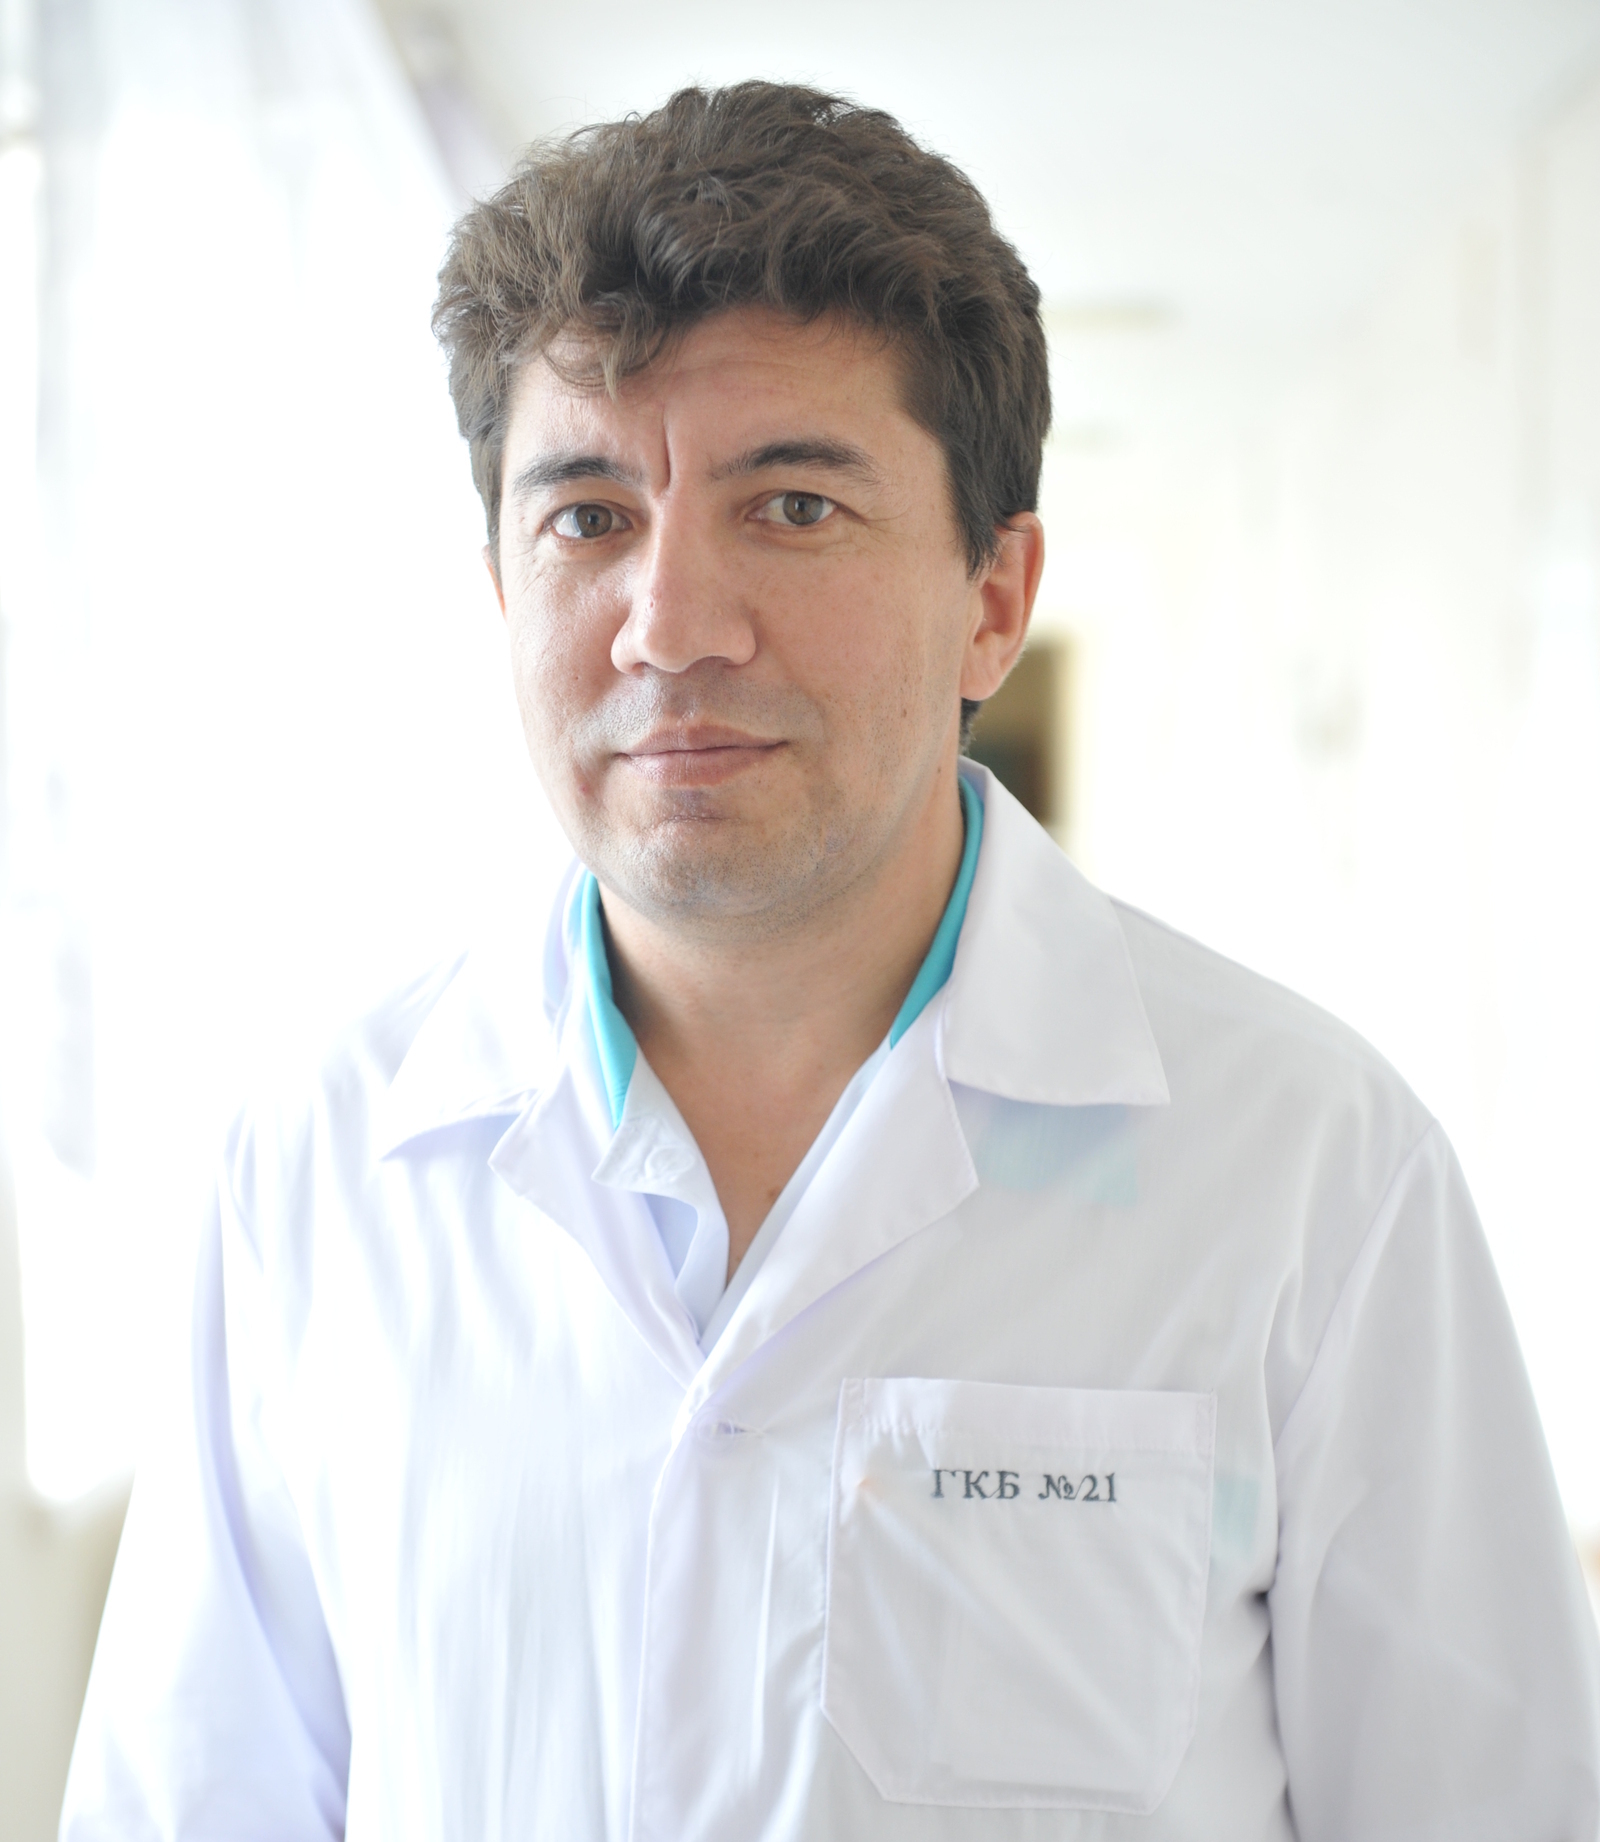 Врач-травматолог из Башкирии рассказал, чем опасен остеопороз и как защититься от коварной болезни